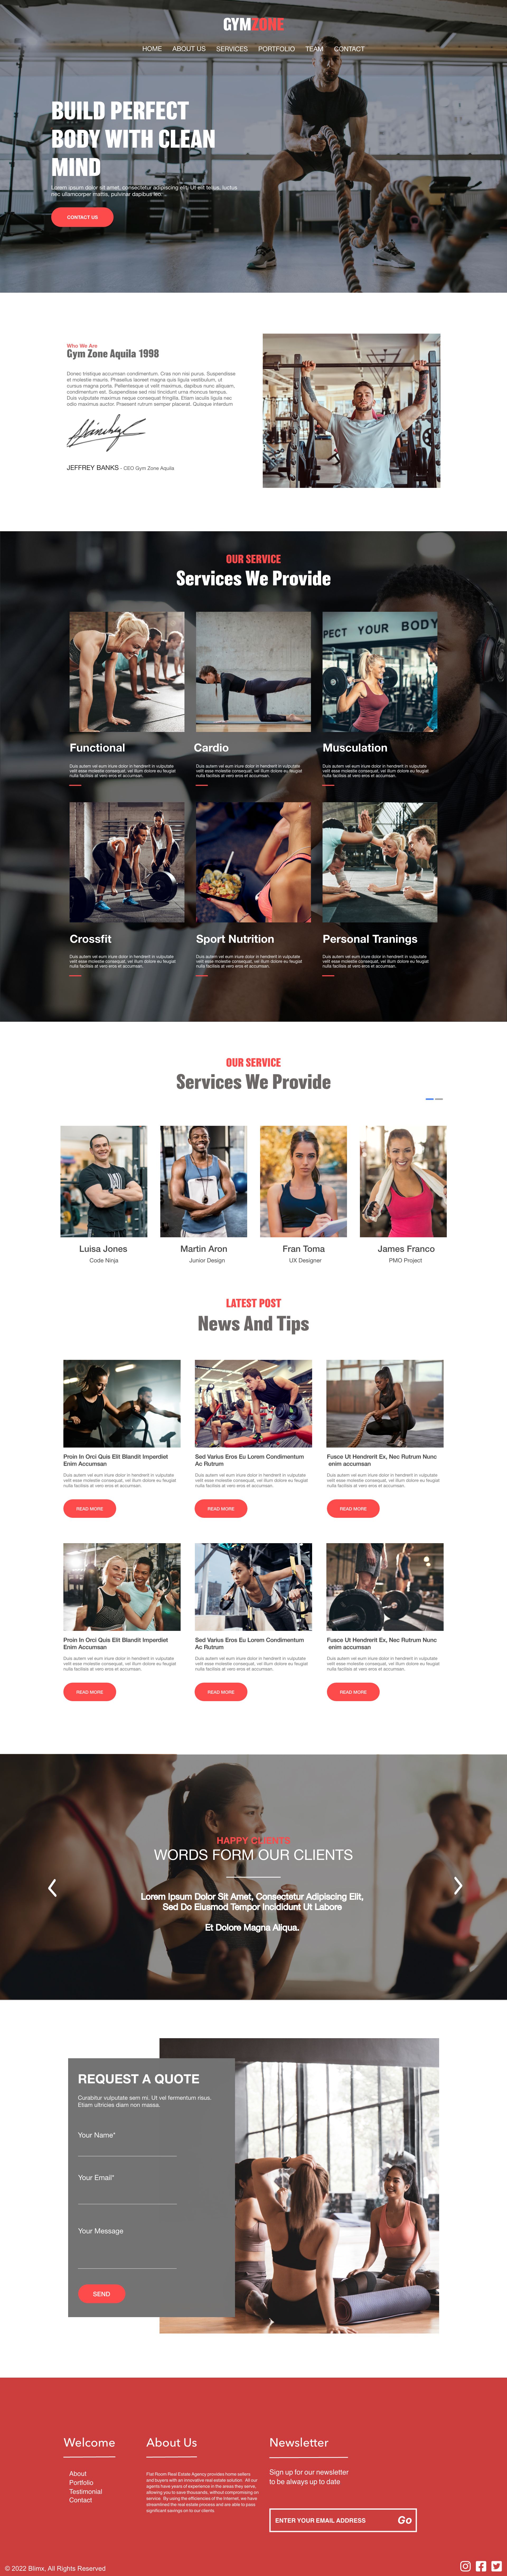 Gym Zone Website Design